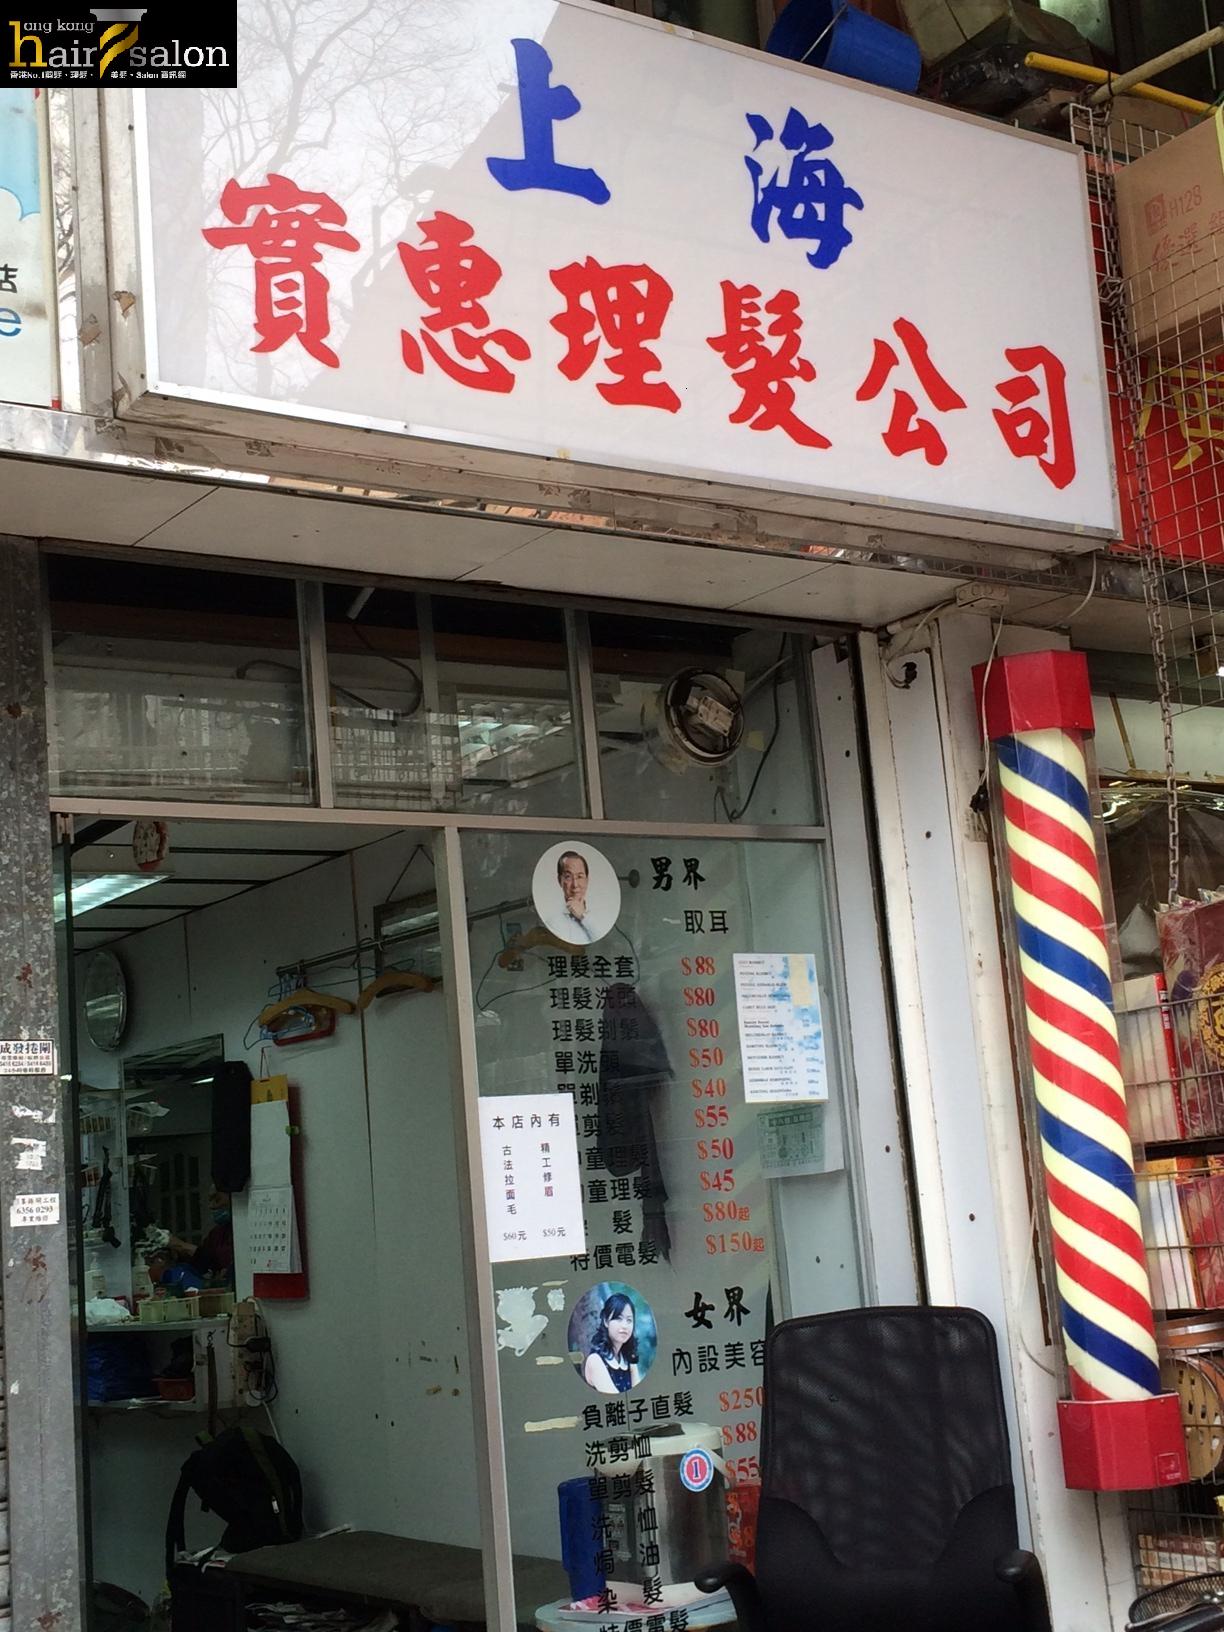 髮型屋: 上海實惠理髮公司